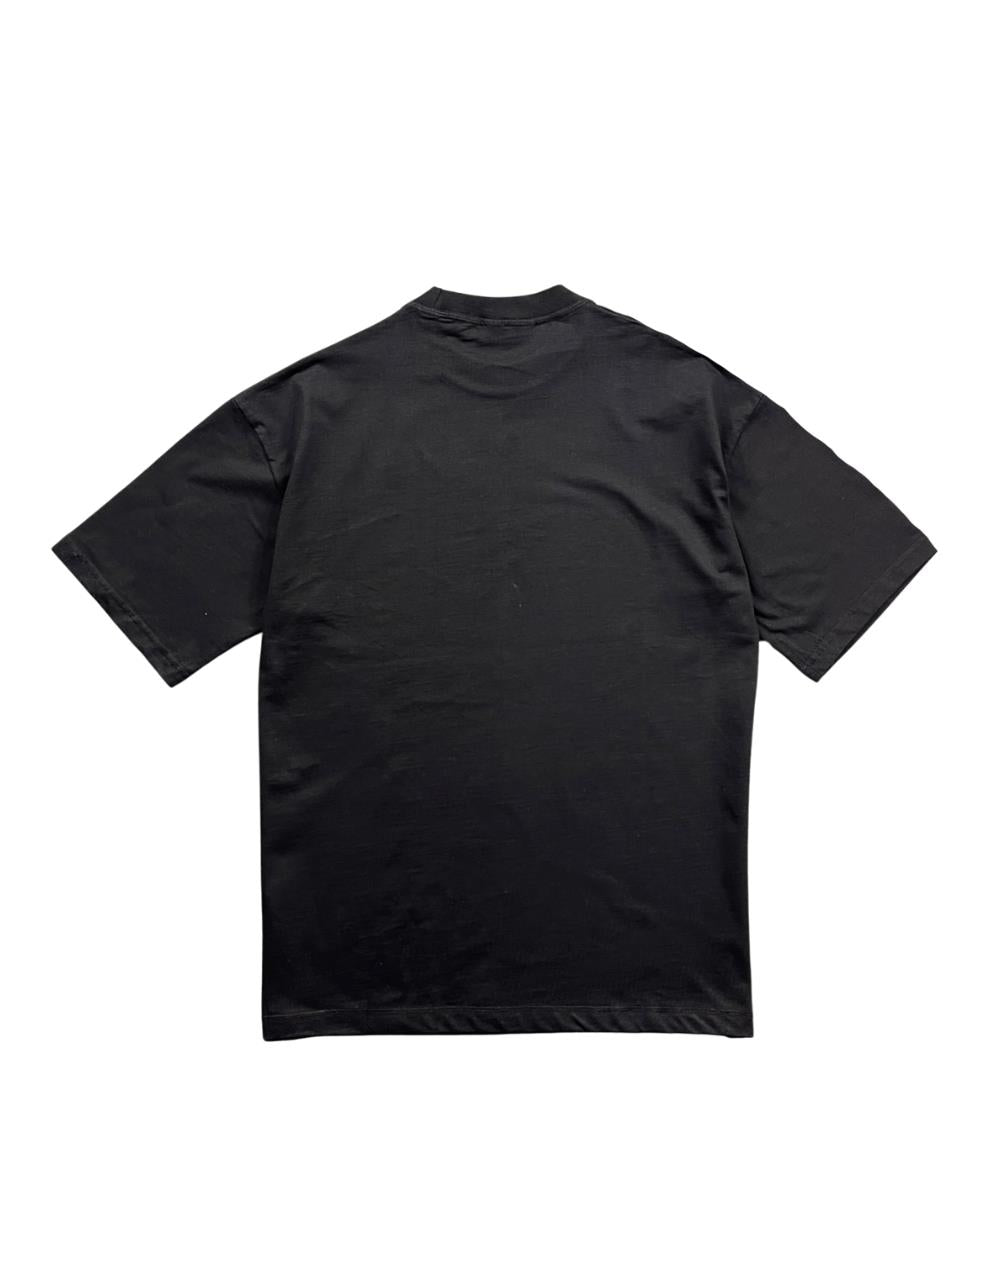 Black Oversize Basic Men's T-Shirt - STREETMODE ™